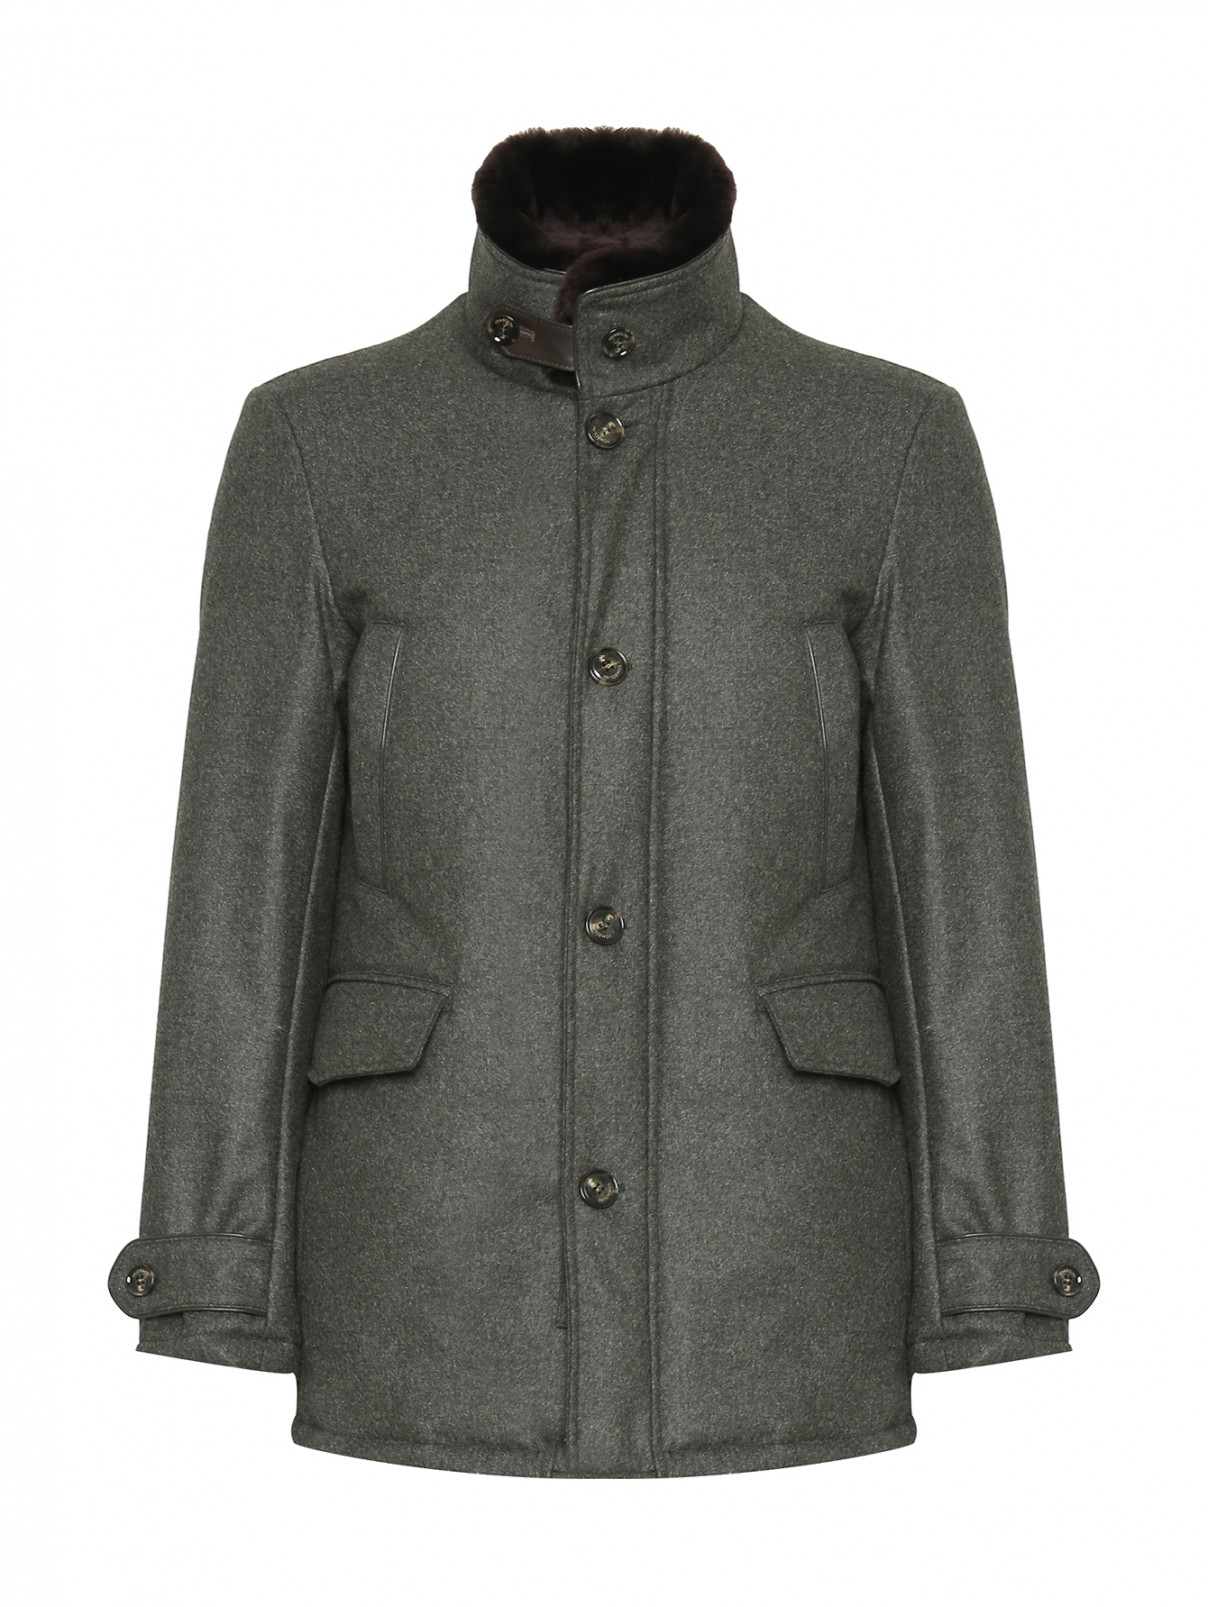 Утепленная куртка из шерсти со съемным воротником Tombolini  –  Общий вид  – Цвет:  Зеленый